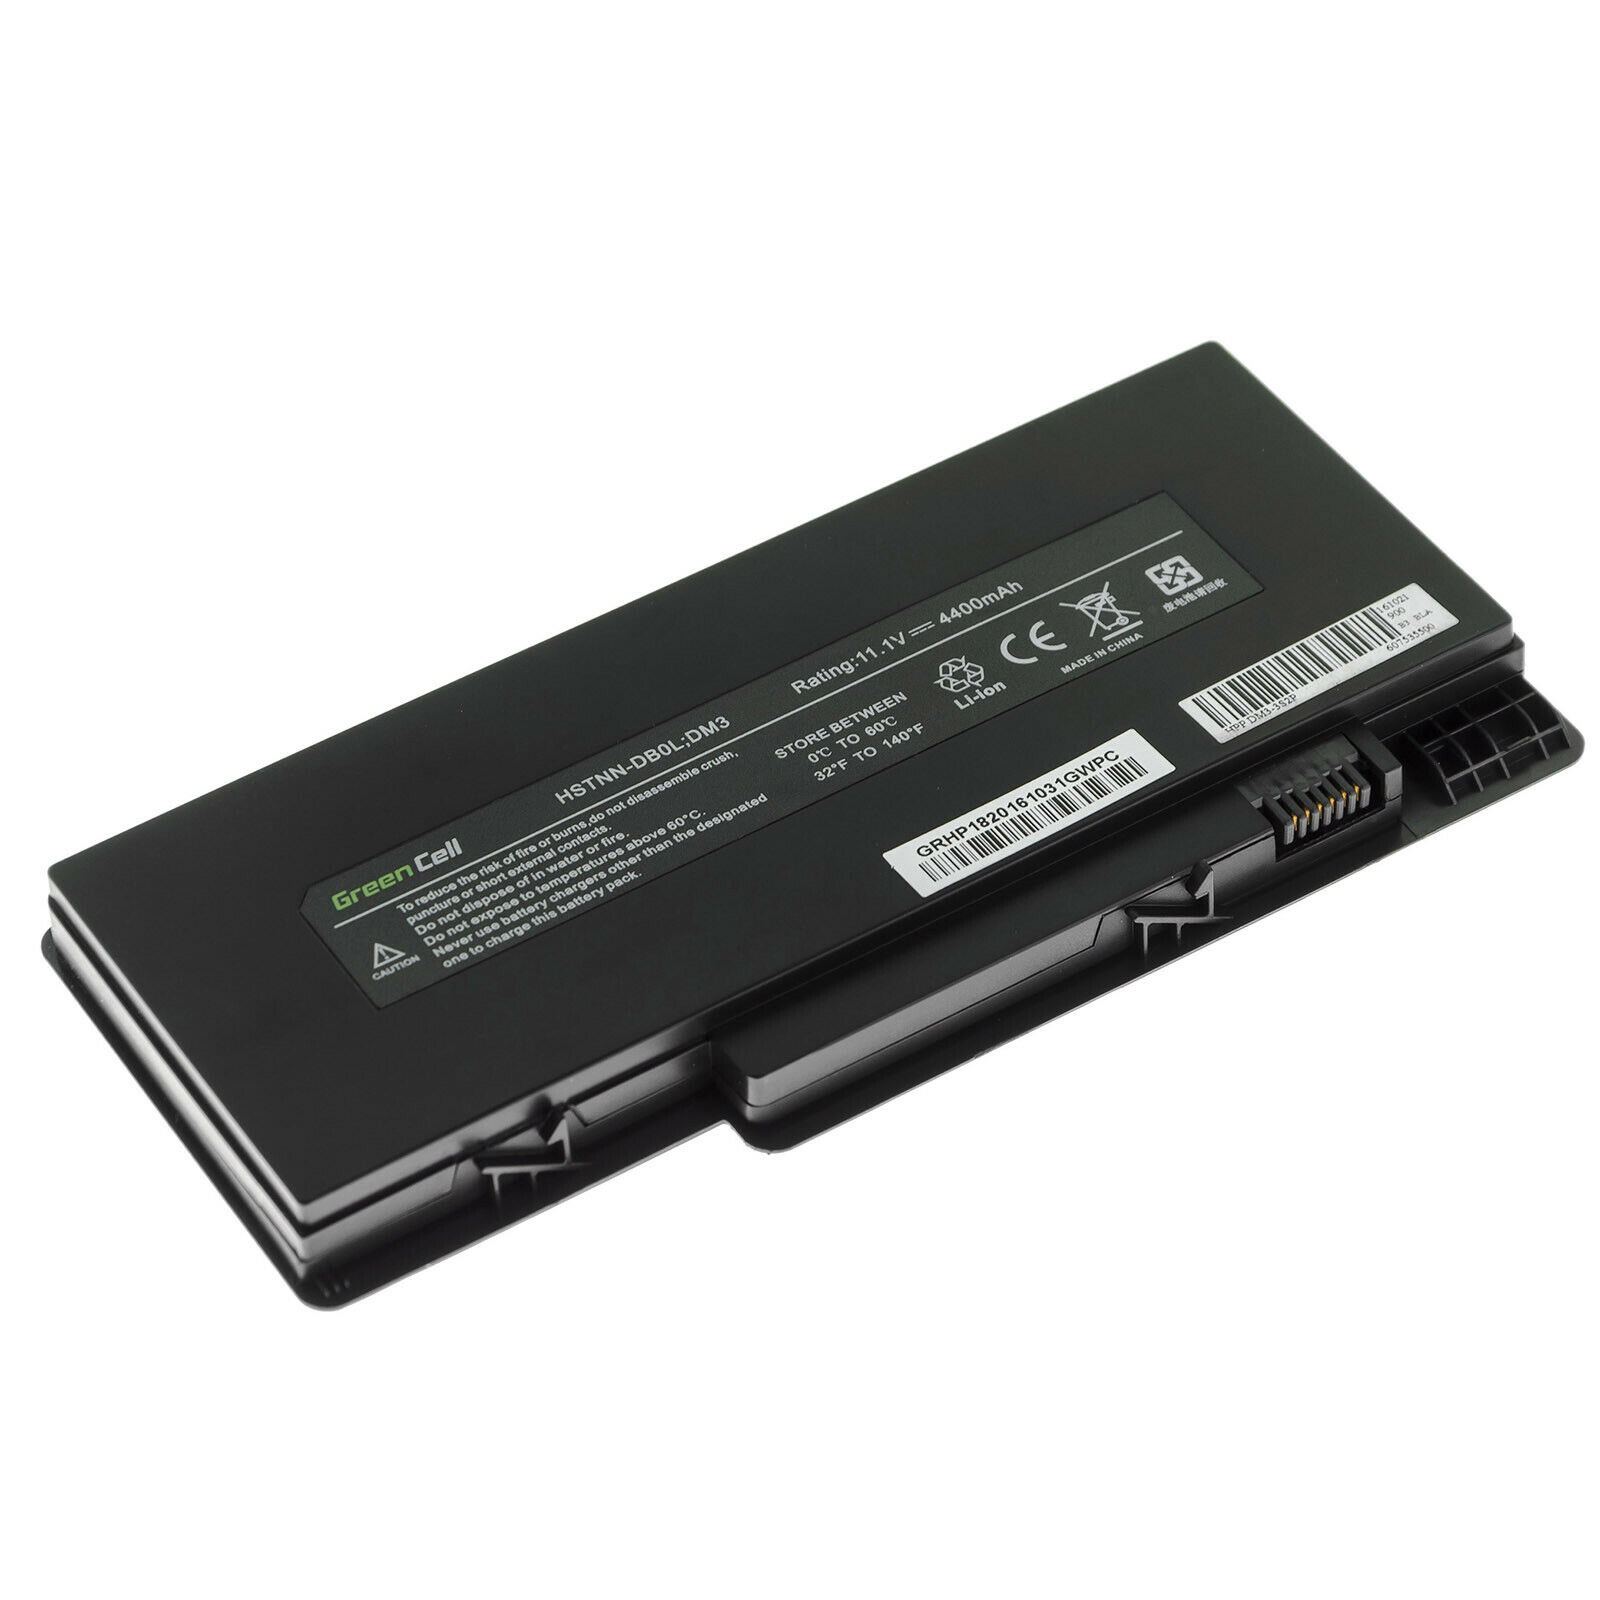 HP VG586AA HSTNN-OB0L HSTNN-E02C FD06 HSTNN-E03C HSTNN-DB0L kompatibelt batterier